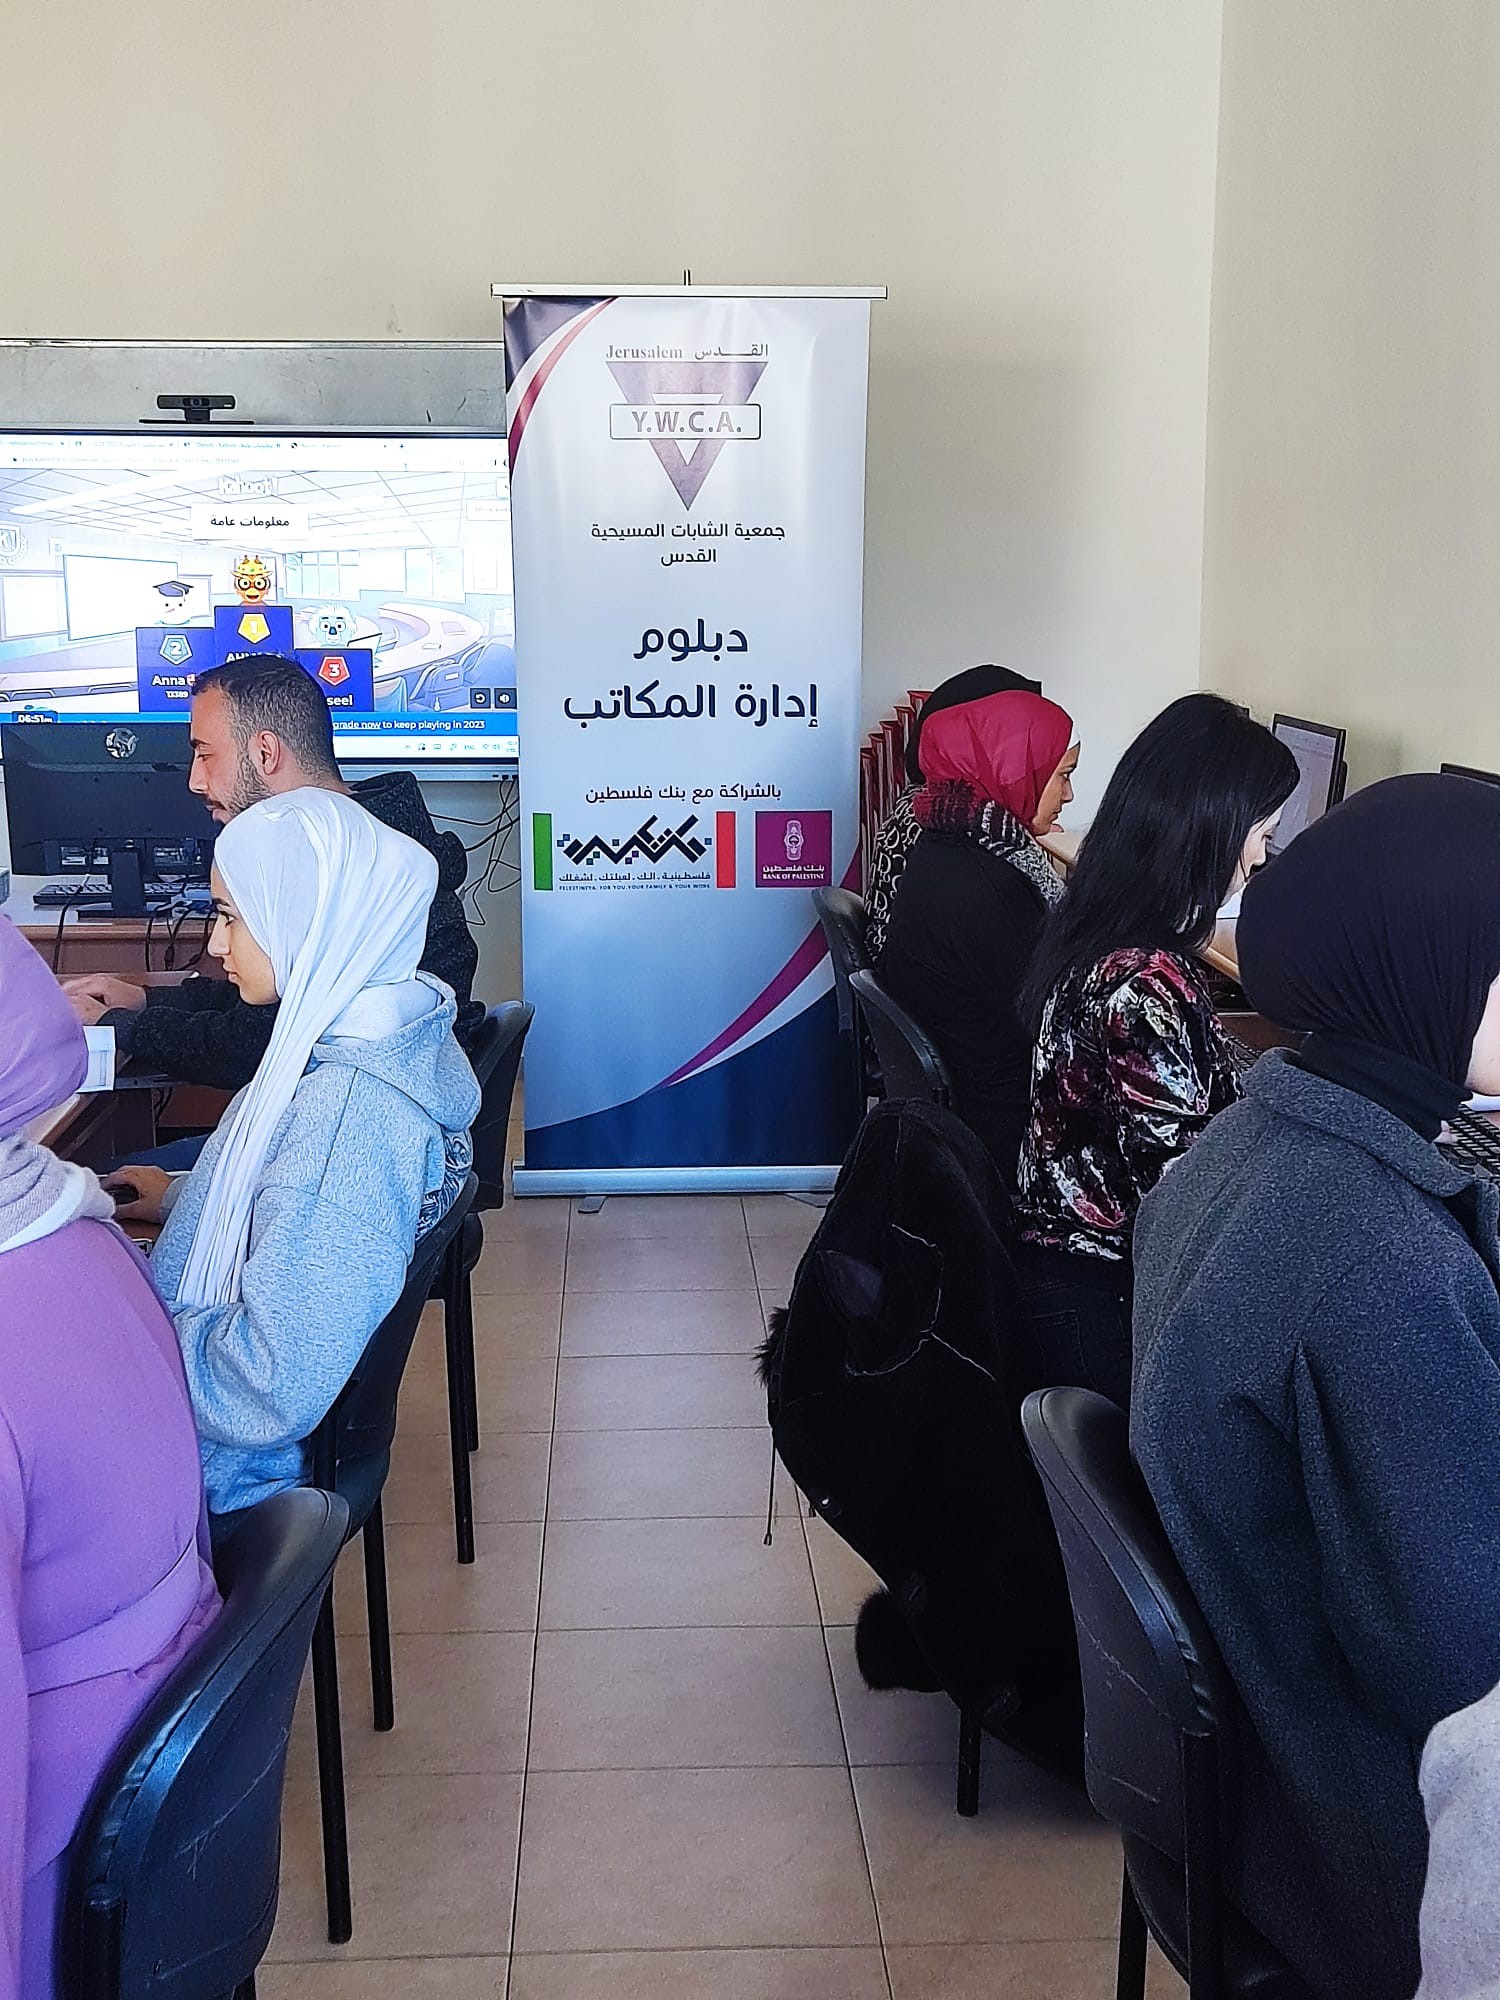 بنك فلسطين يساهم في دعم دبلوم إدارة وأتمتة المكاتب بتنفيذ من جمعية الشابات المسيحية في القدس YWCA